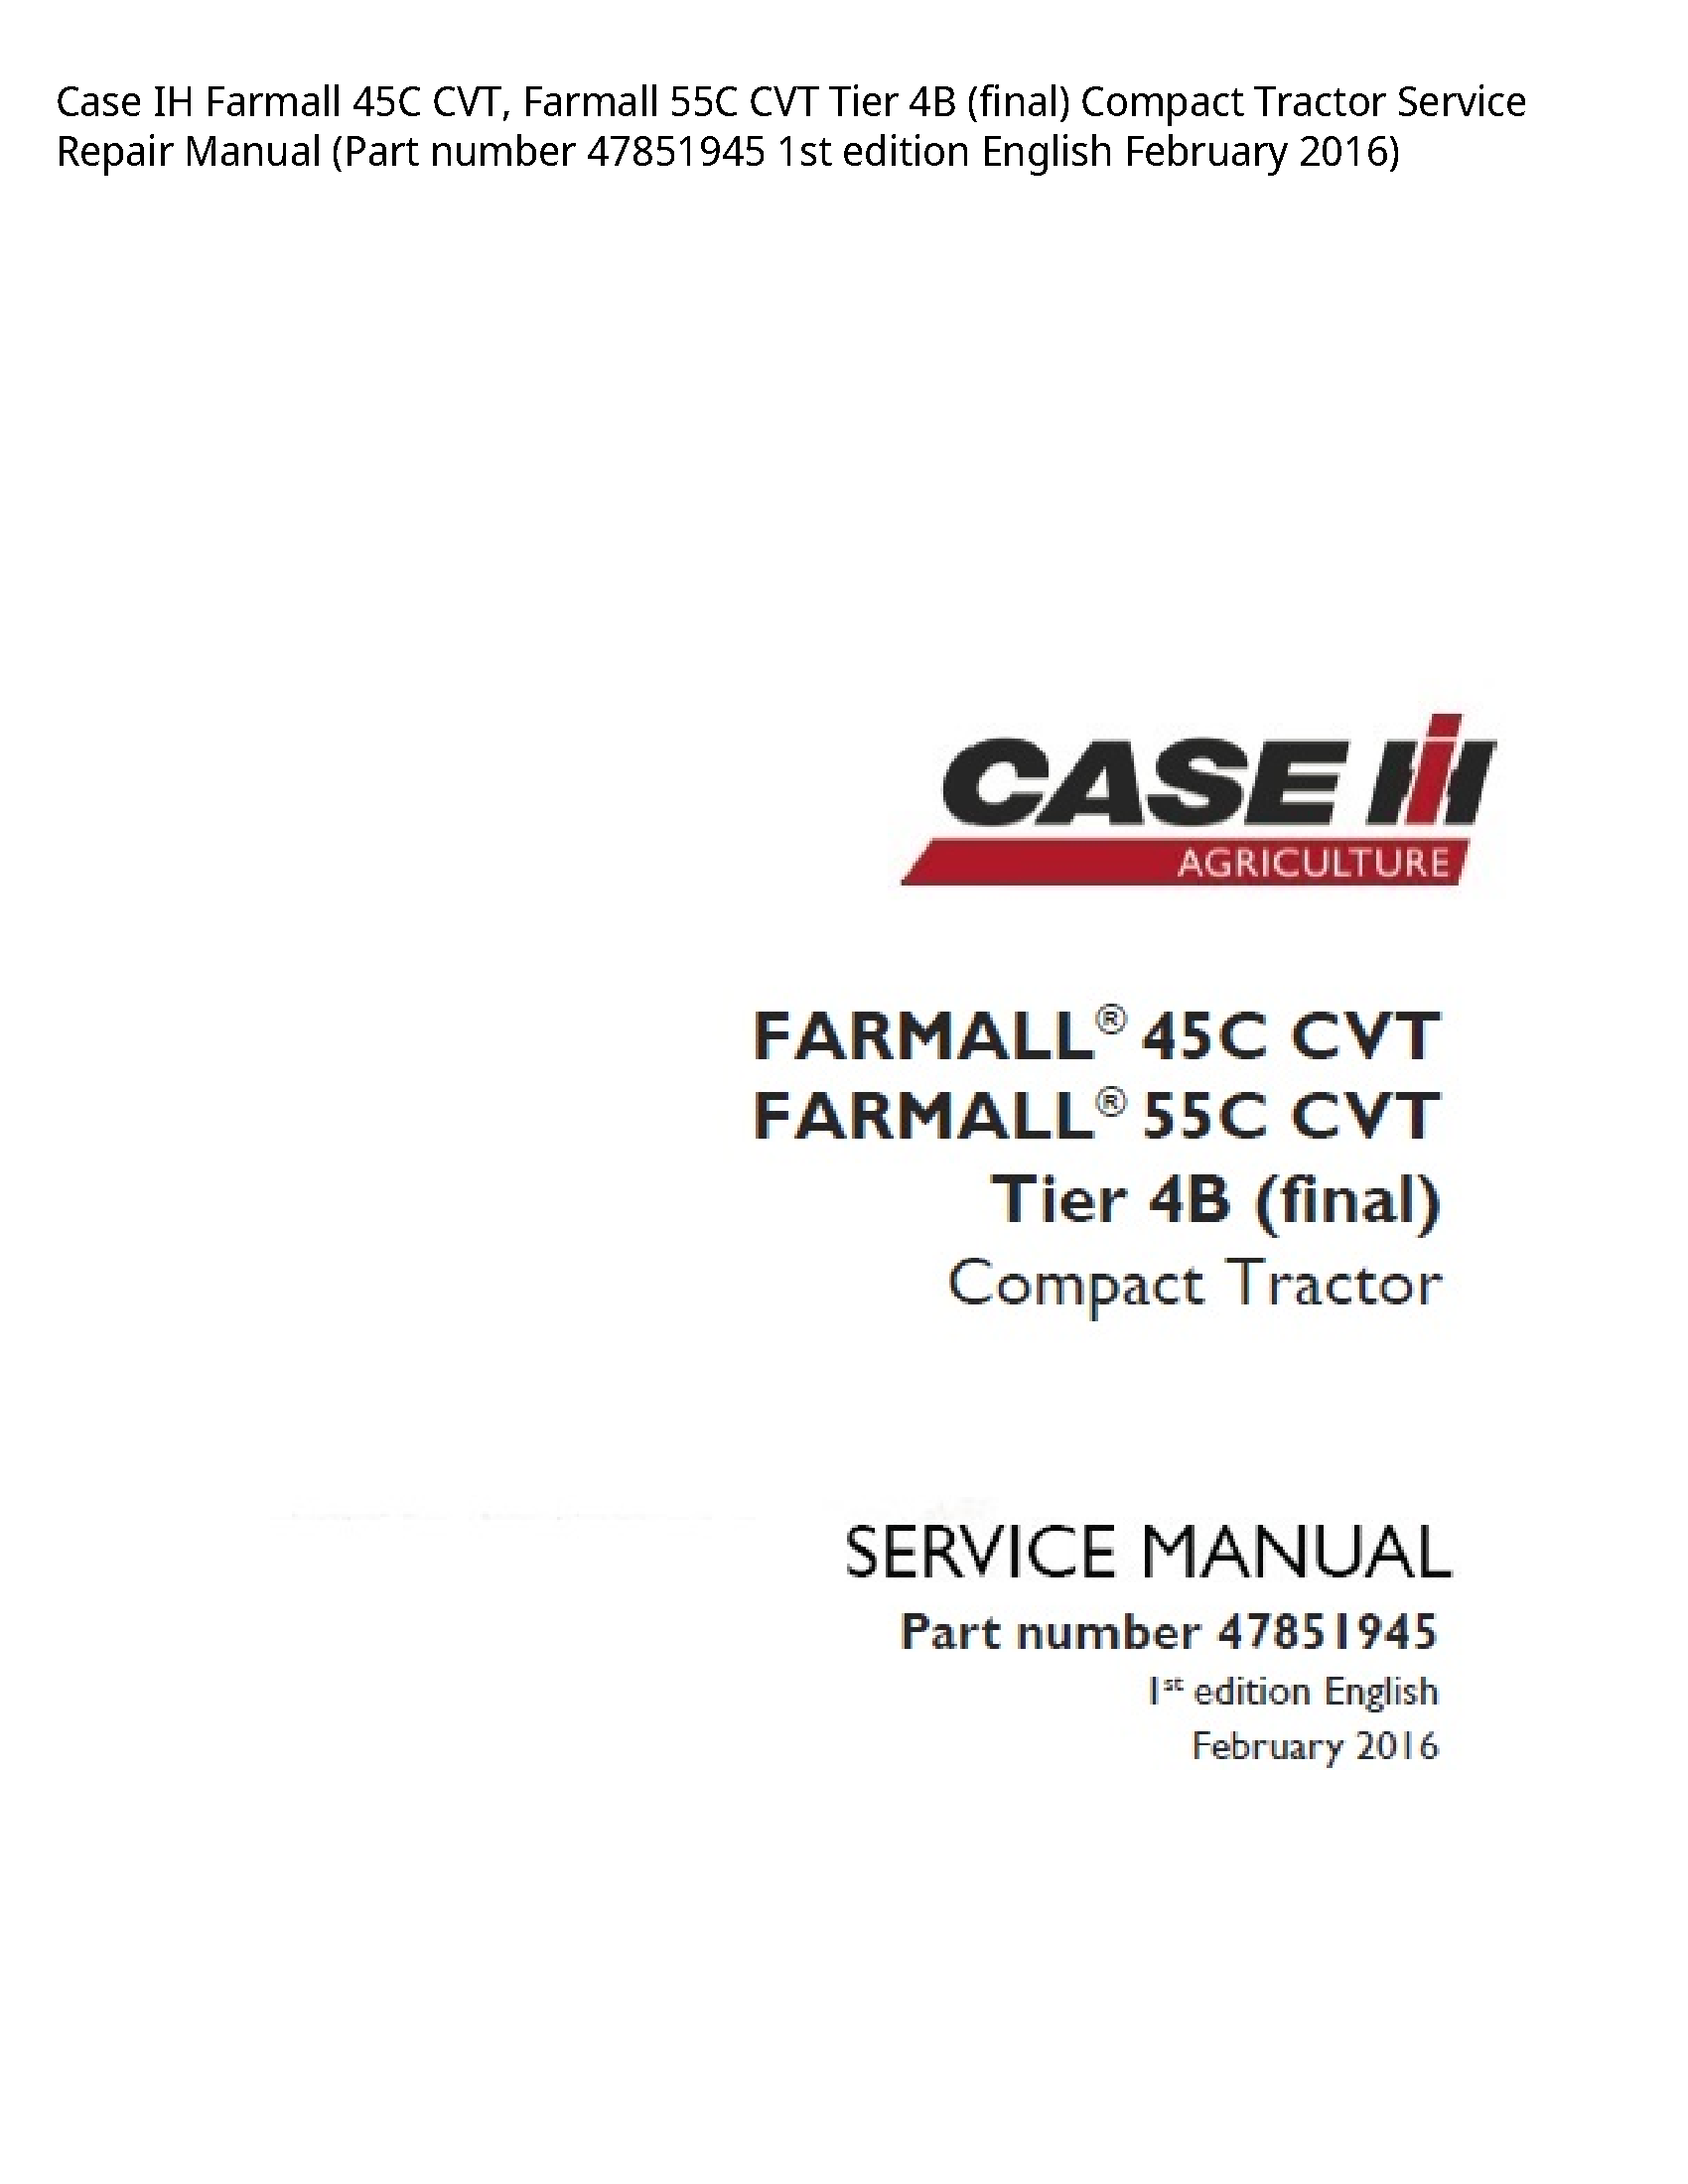 Case/Case IH 45C IH Farmall CVT manual